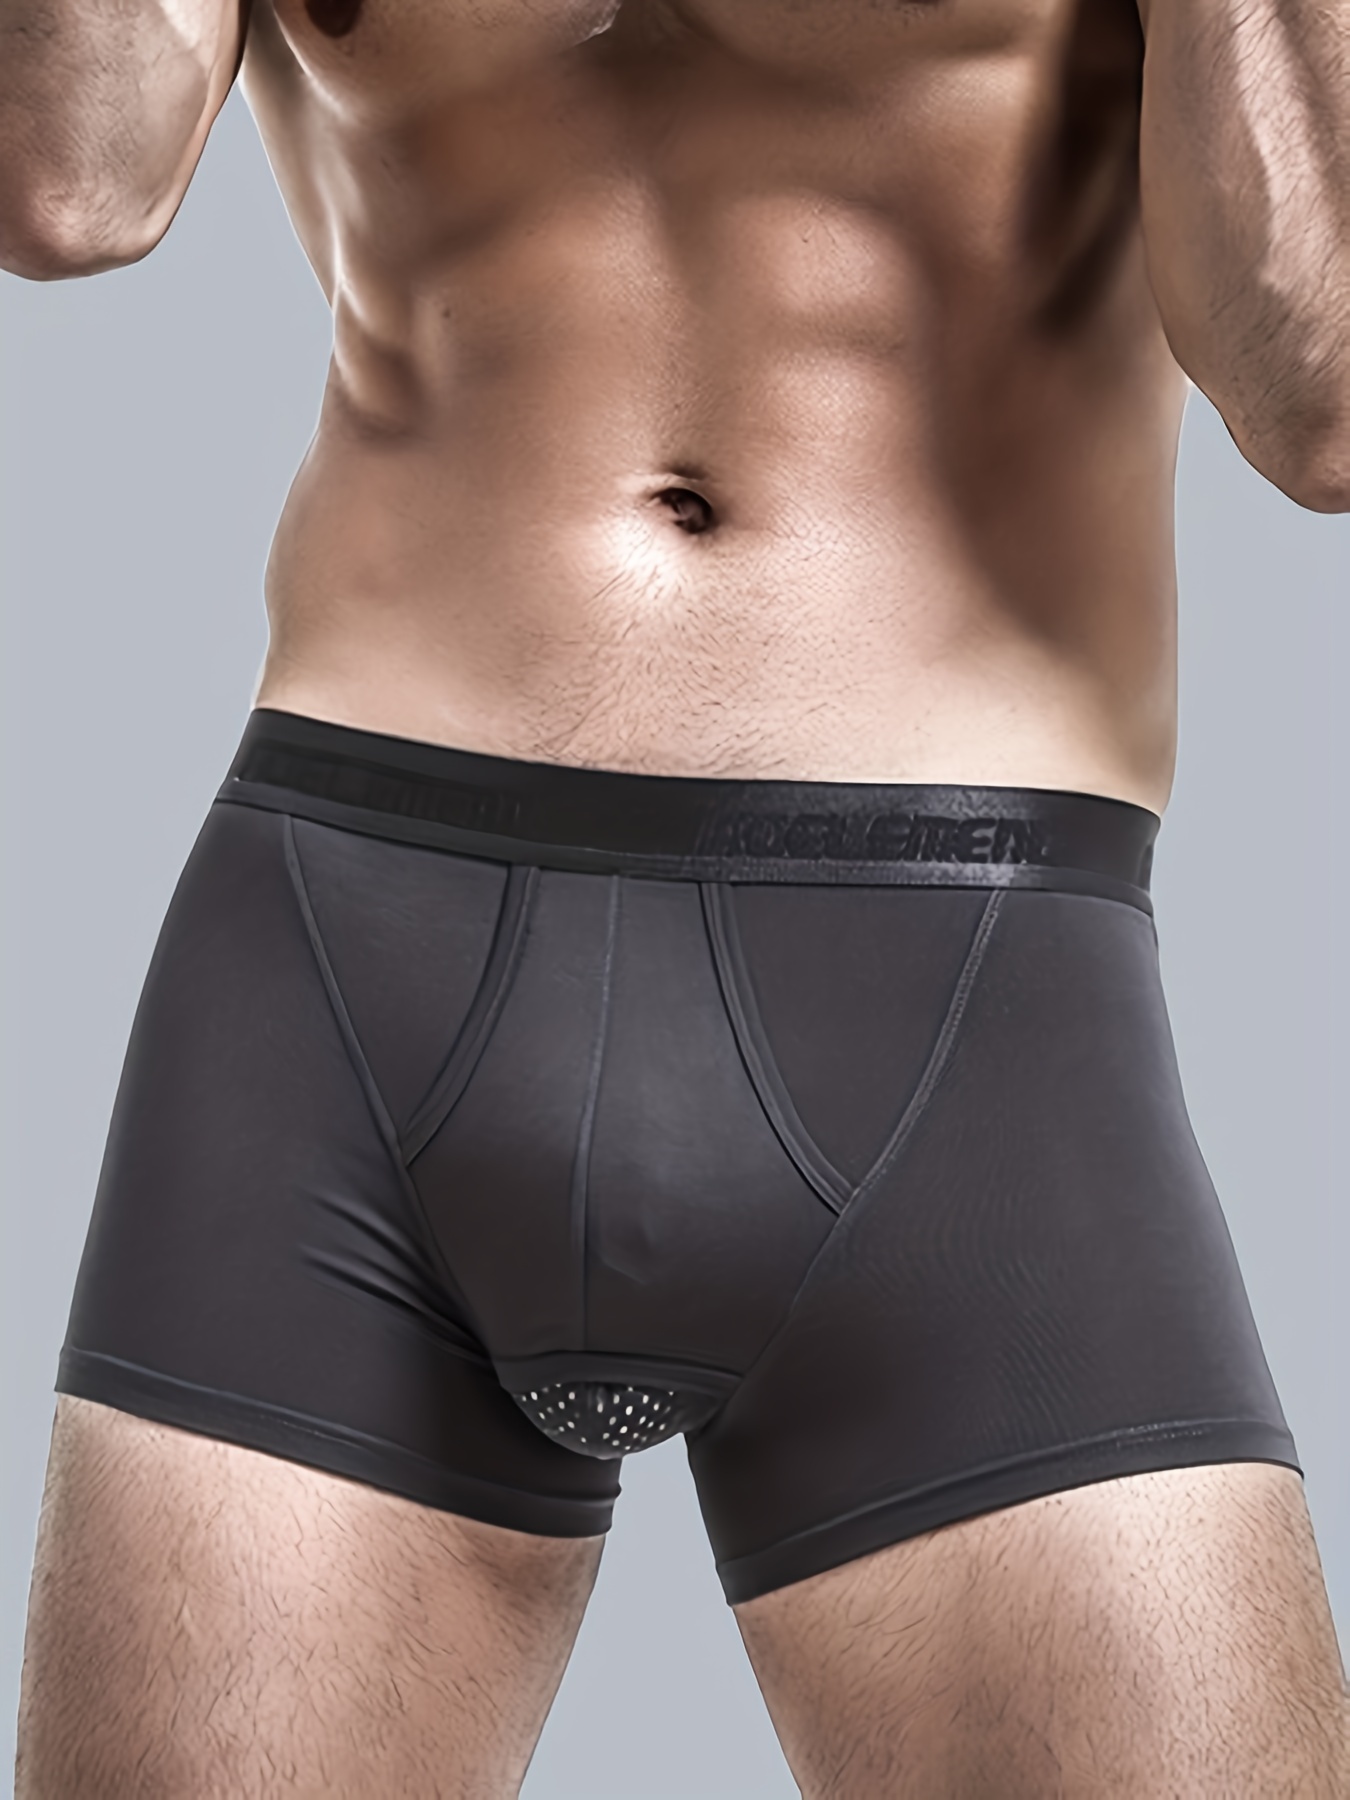 Mens Elephant Bulge Pouch Panties Underwear Briefs Kinker Boxer Shorts ▲R